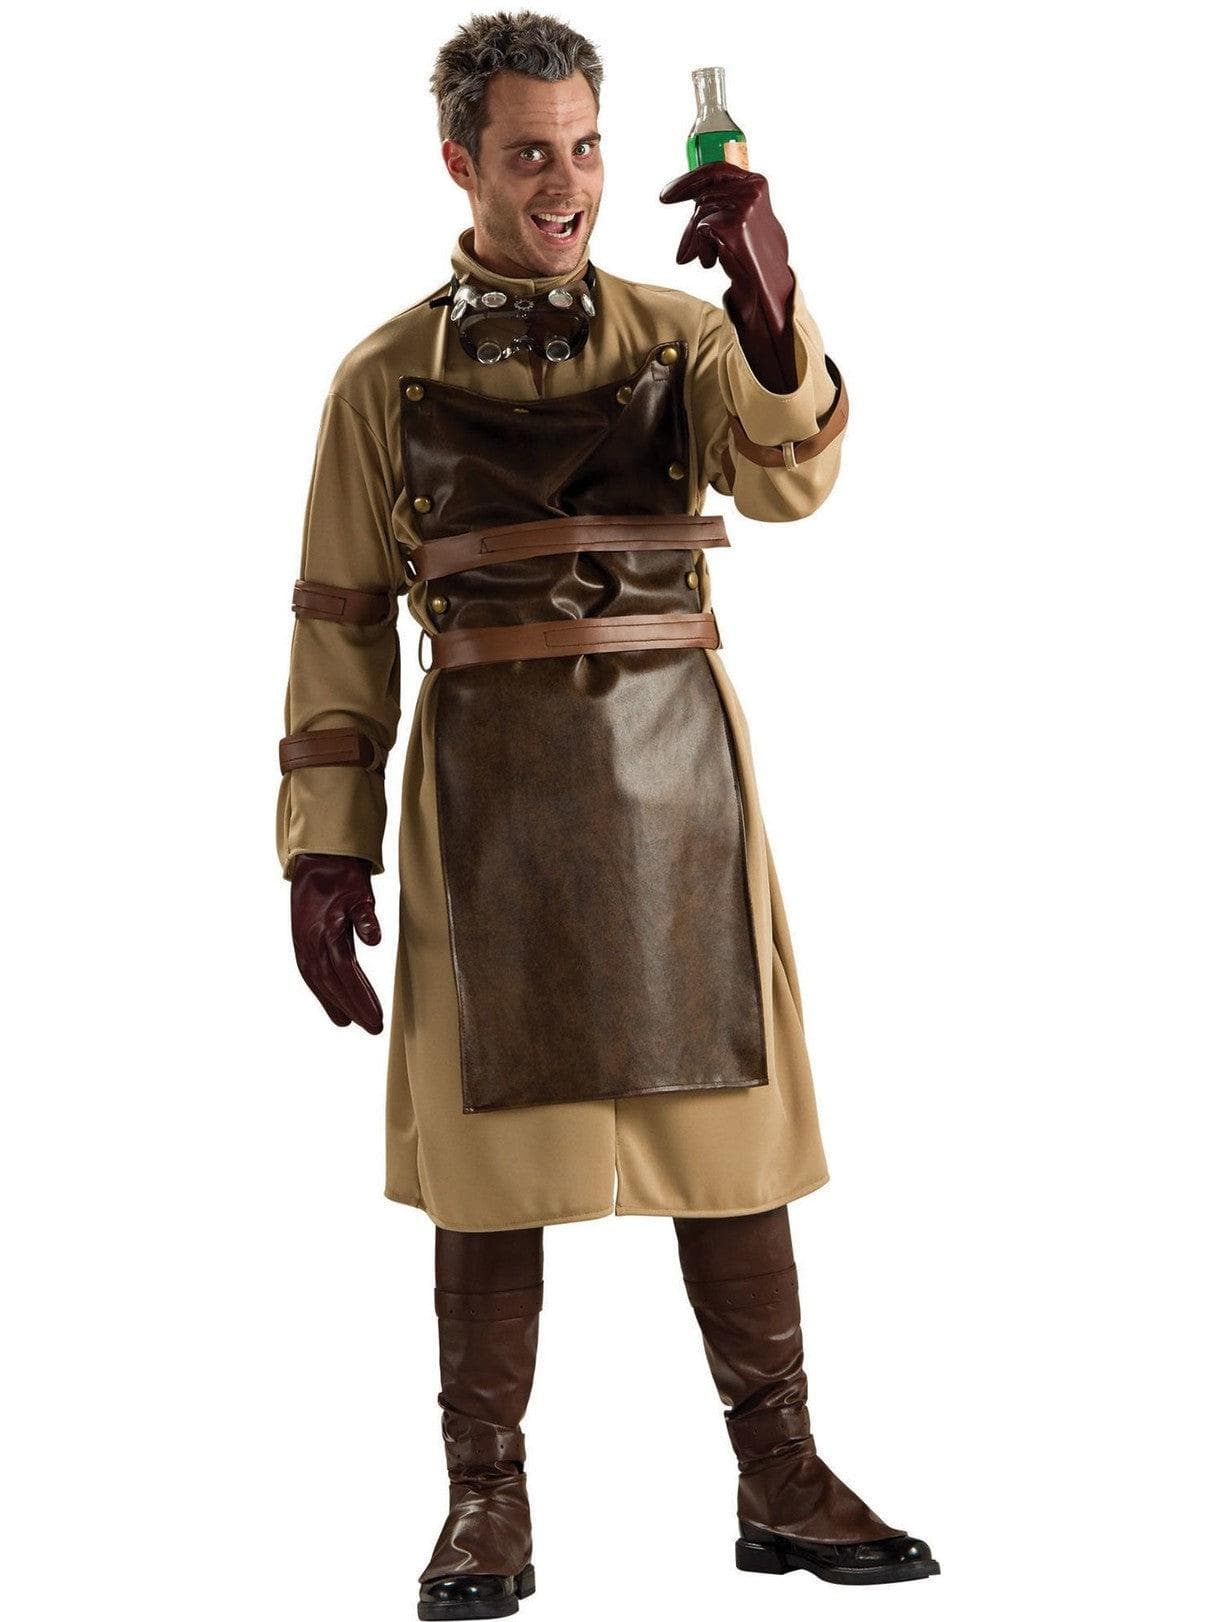 Adult Mad Scientist Costume - costumes.com